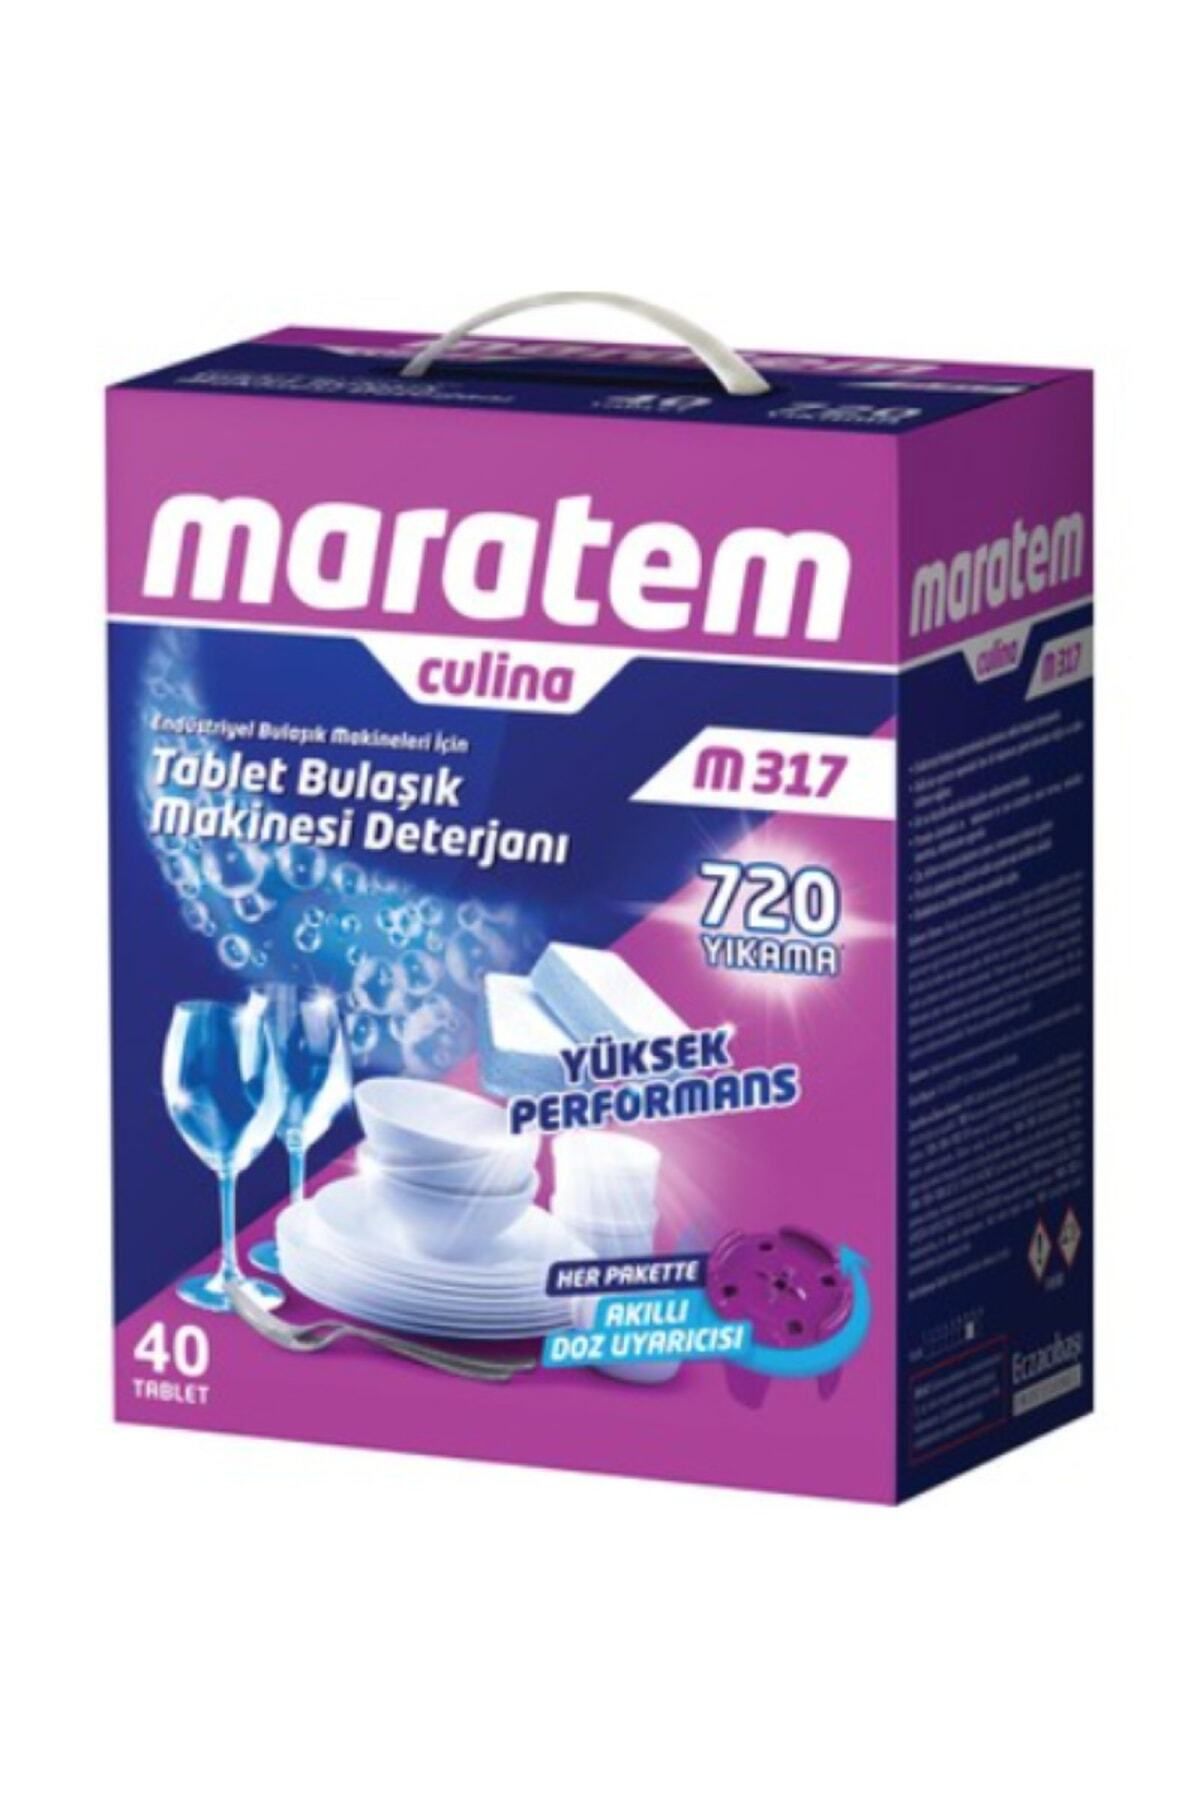 Maratem M 317 Tablet Endüstriyel Bulaşık Makinası Deterjanı